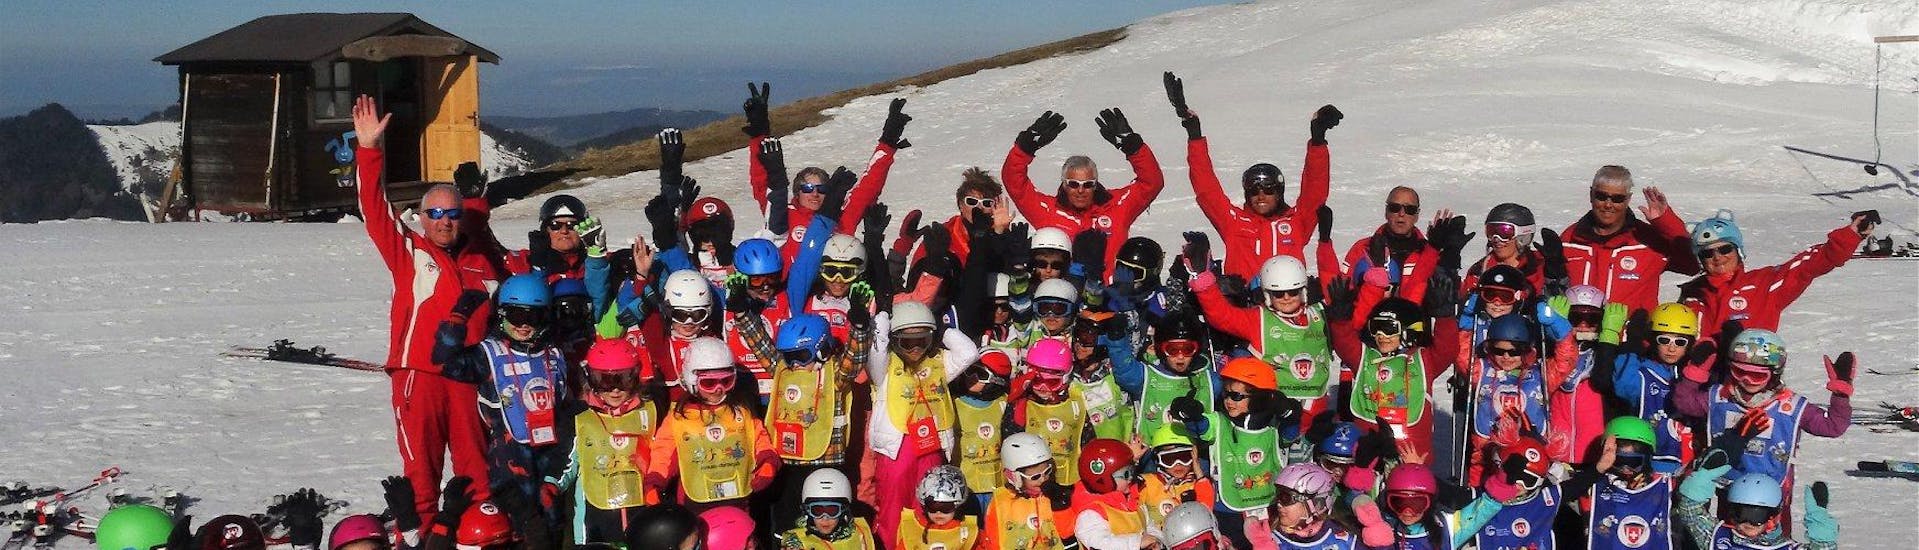 Clases de esquí para niños a partir de 6 años con experiencia.